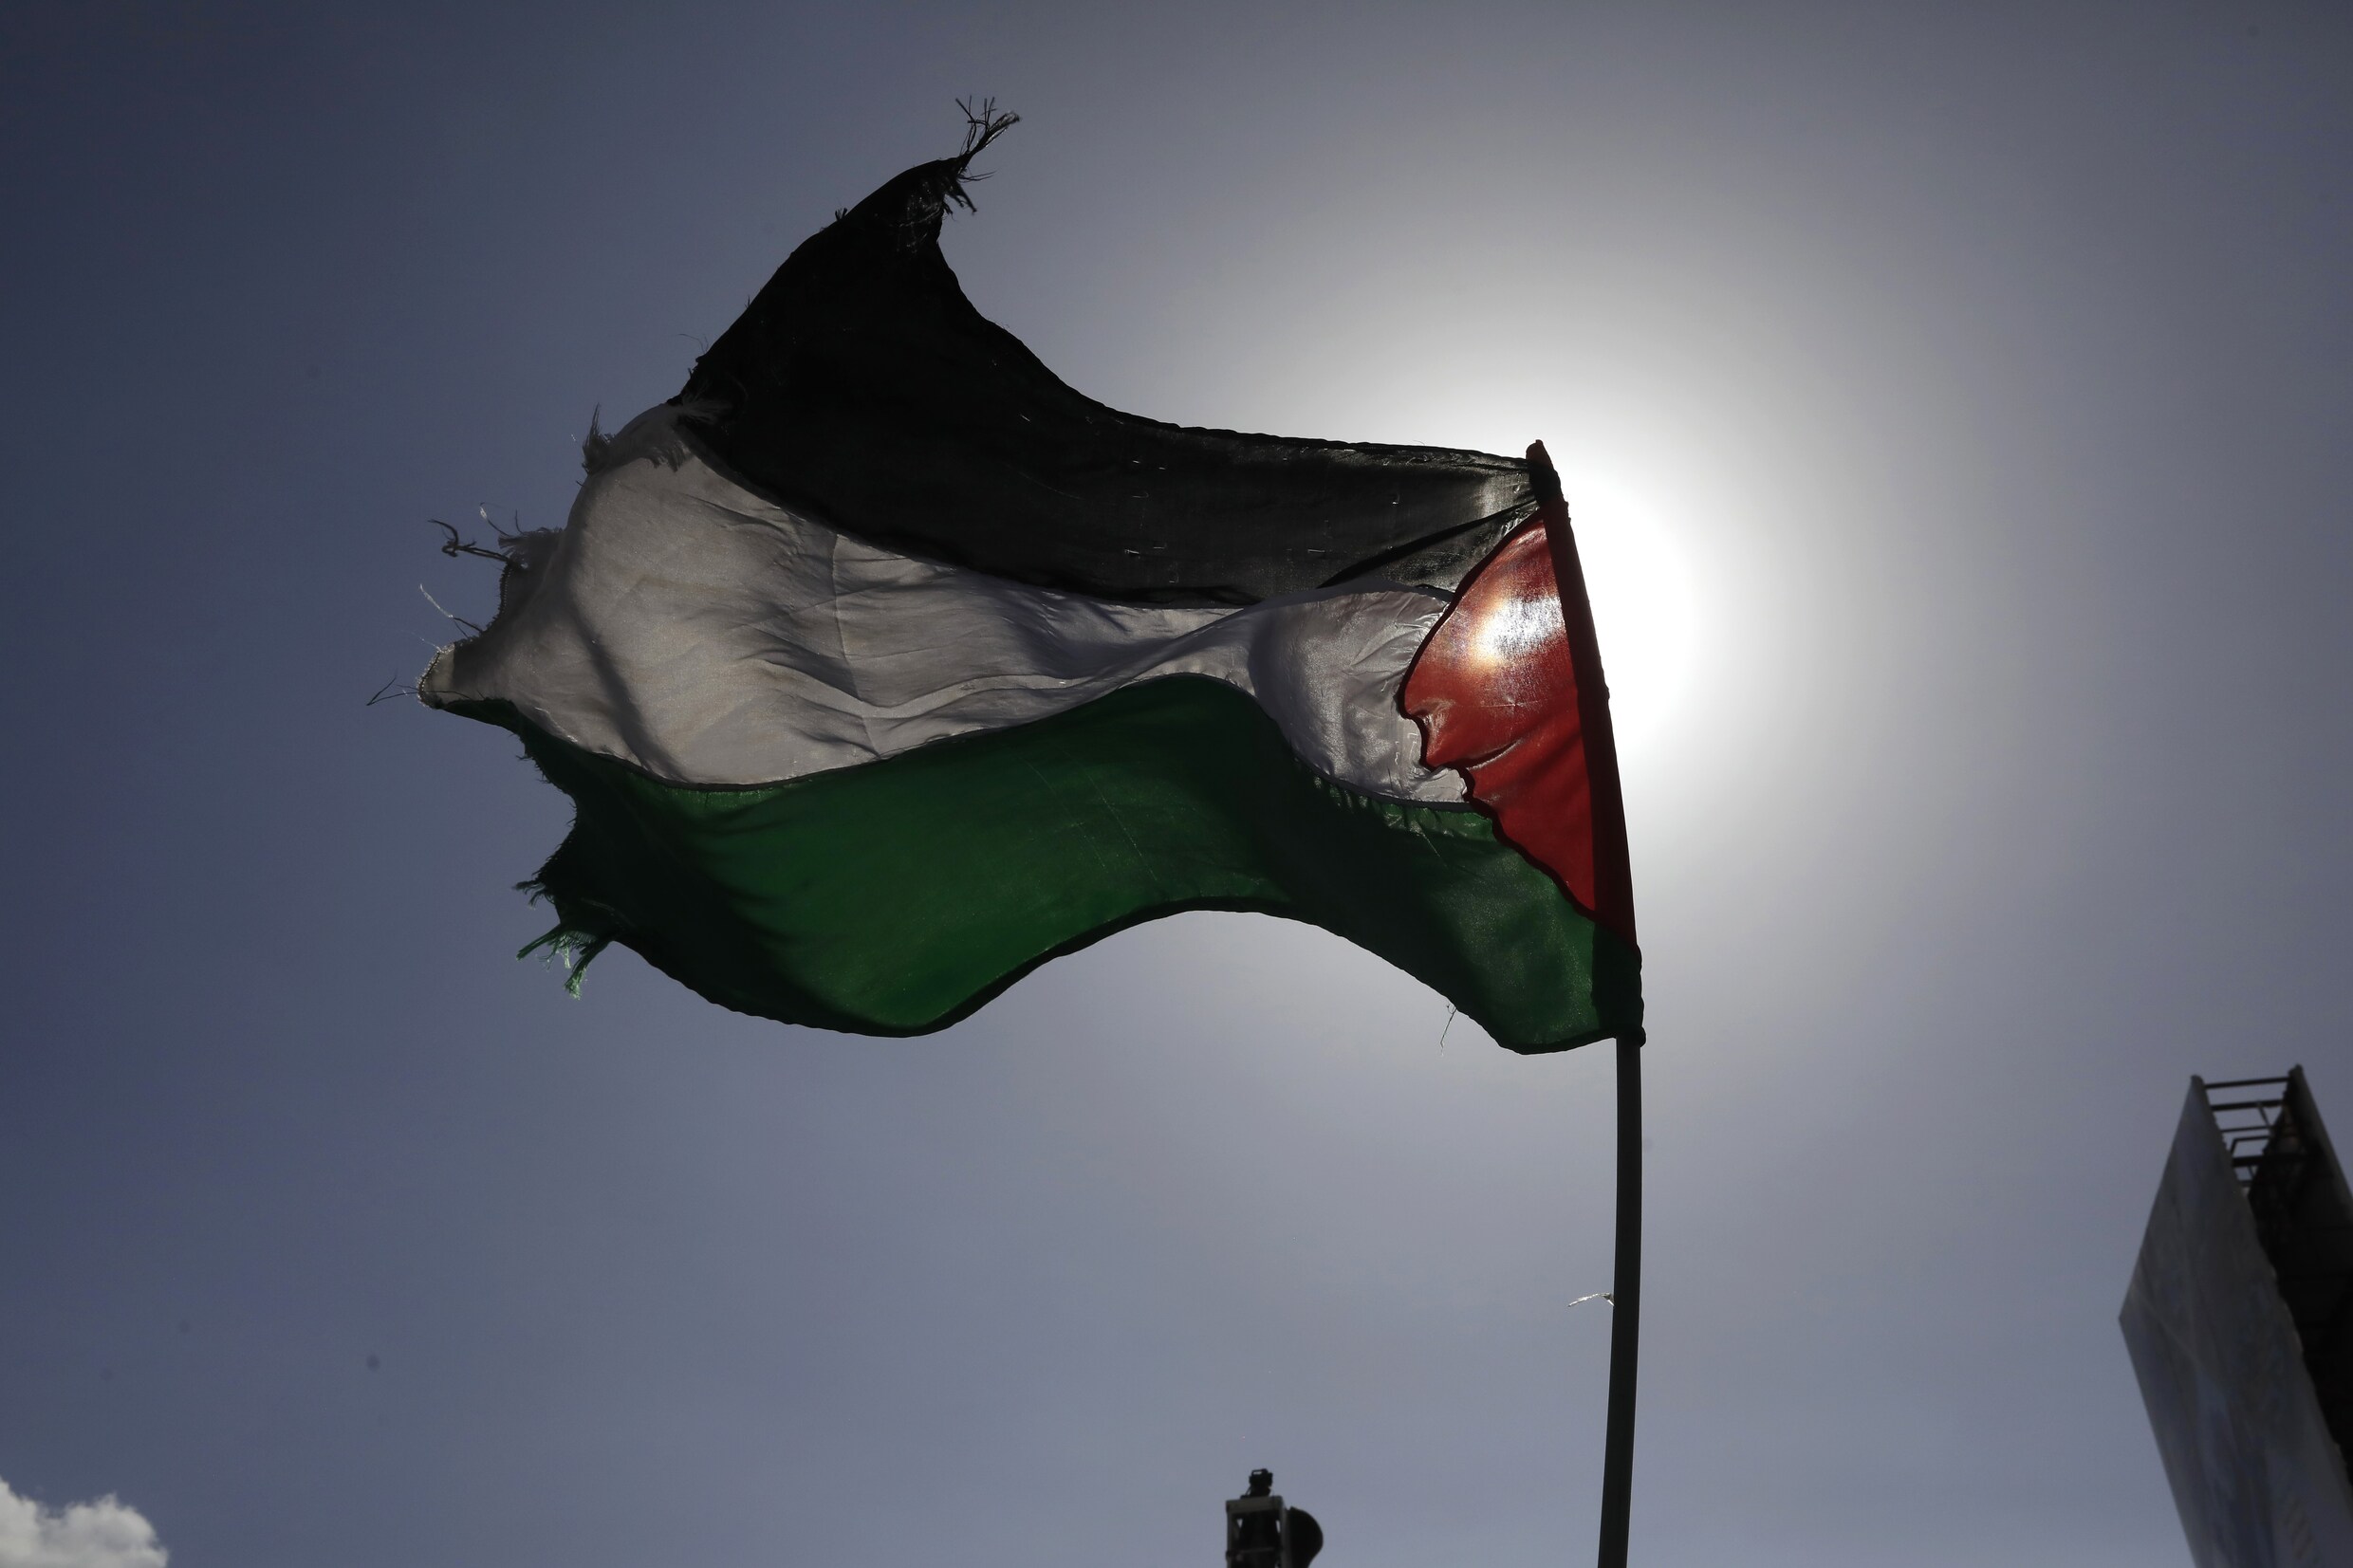 Live - Crisis Midden-Oosten. Lichaam vermeende Israëlische gijzelaar gevonden in graf van slachtoffer 7 oktober • Hamas naar Egypte voor gesprekken